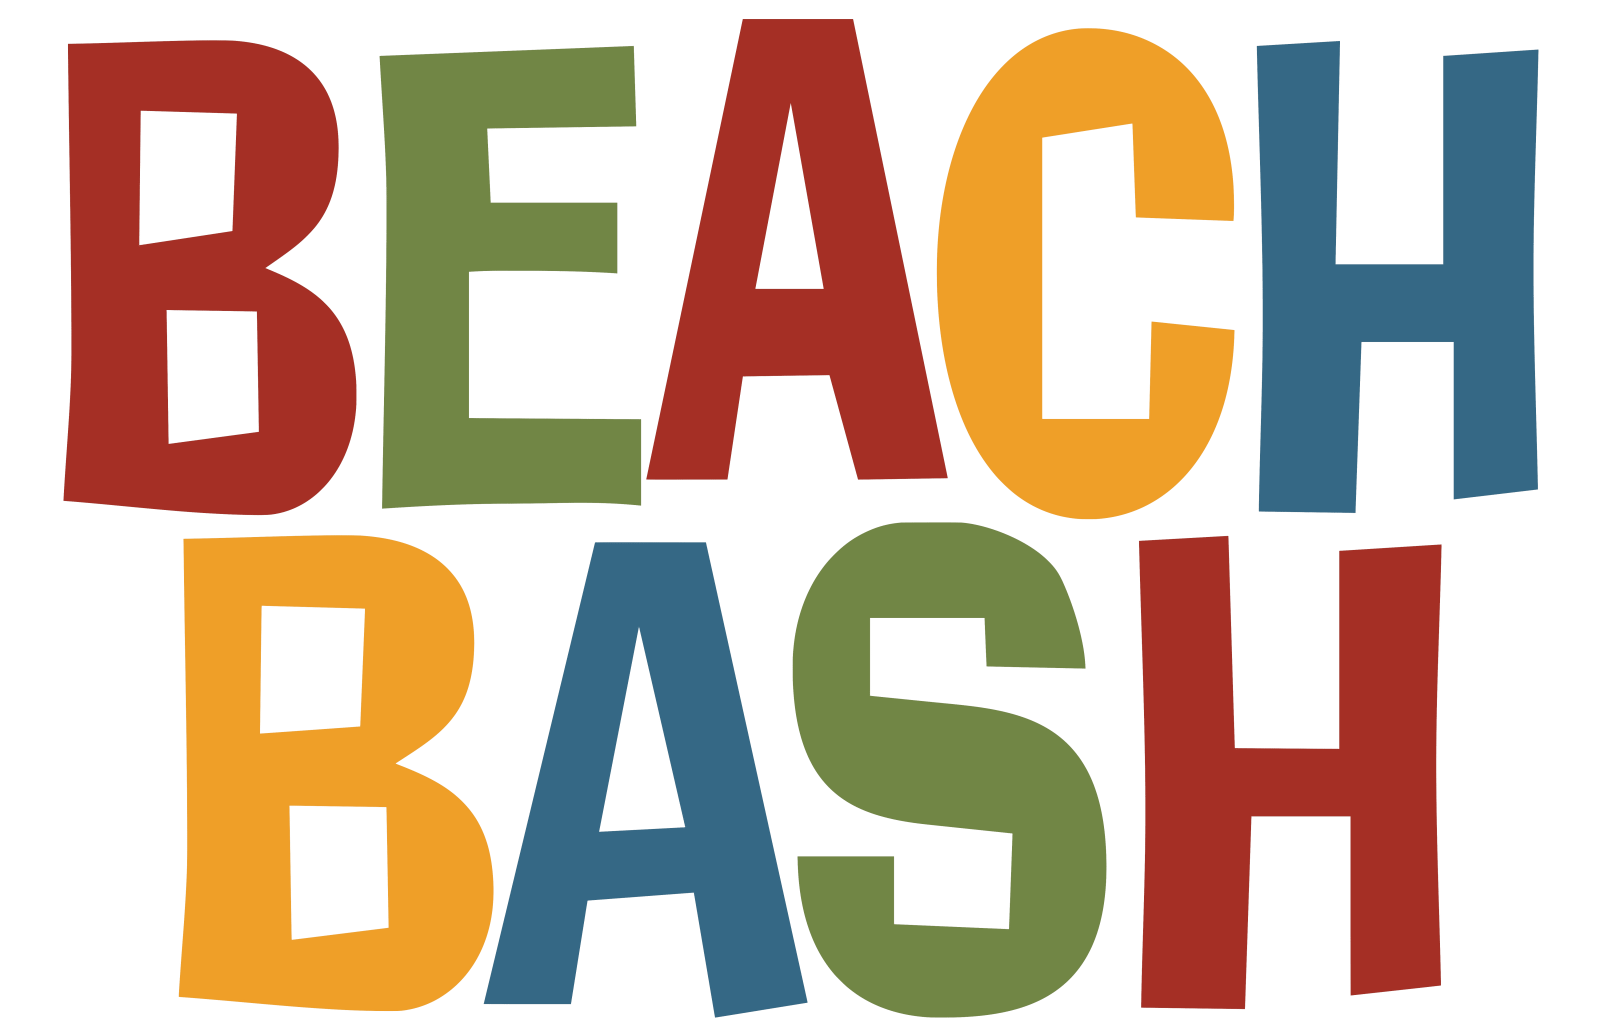 clipart beach logo